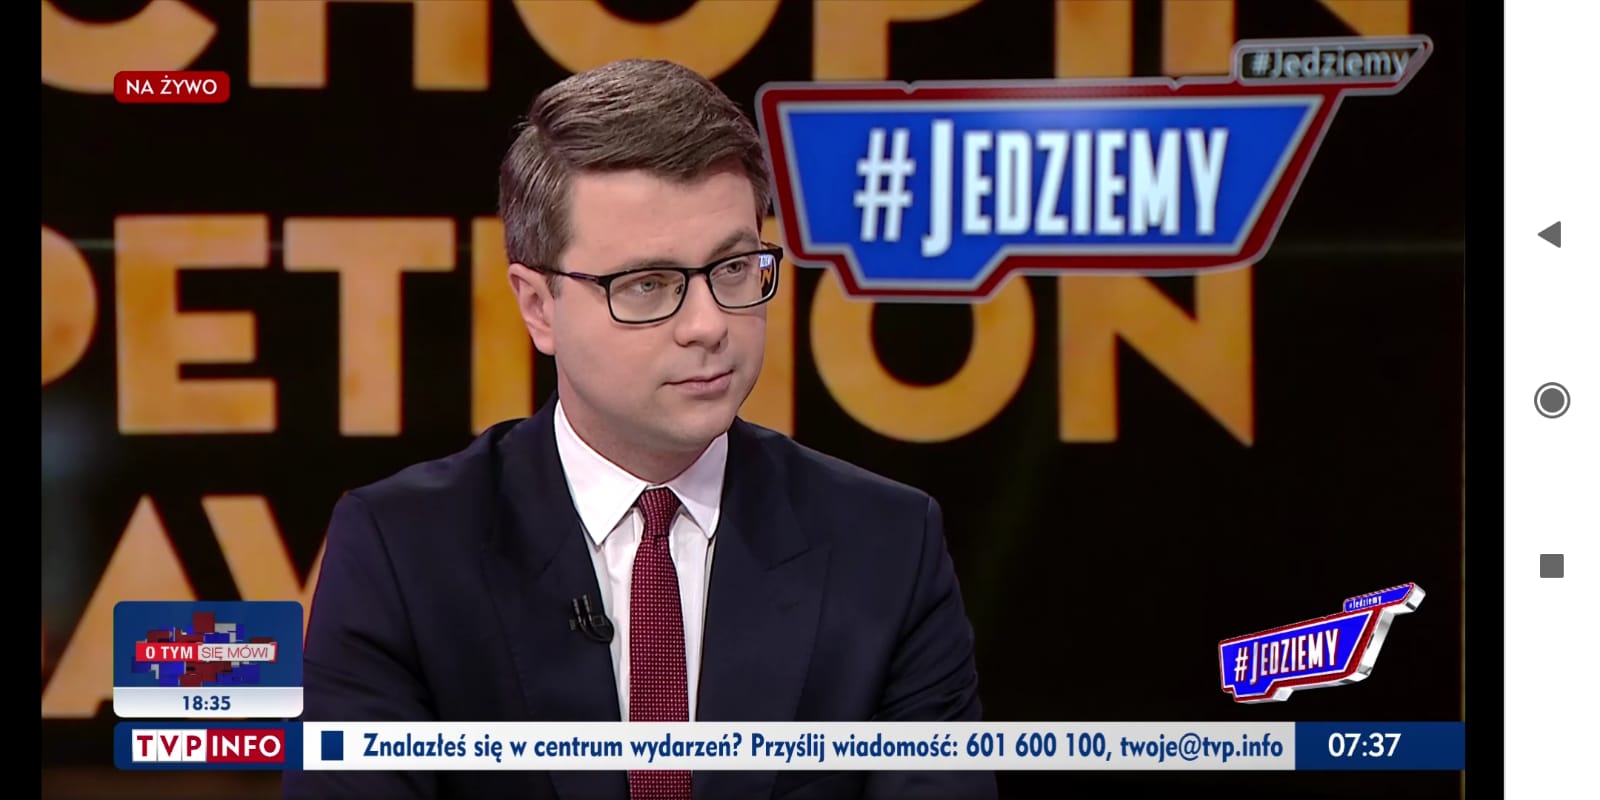 Rzecznik rządu Piotr Müller wziął udział w porannym programie #Jedziemy w TVP info.